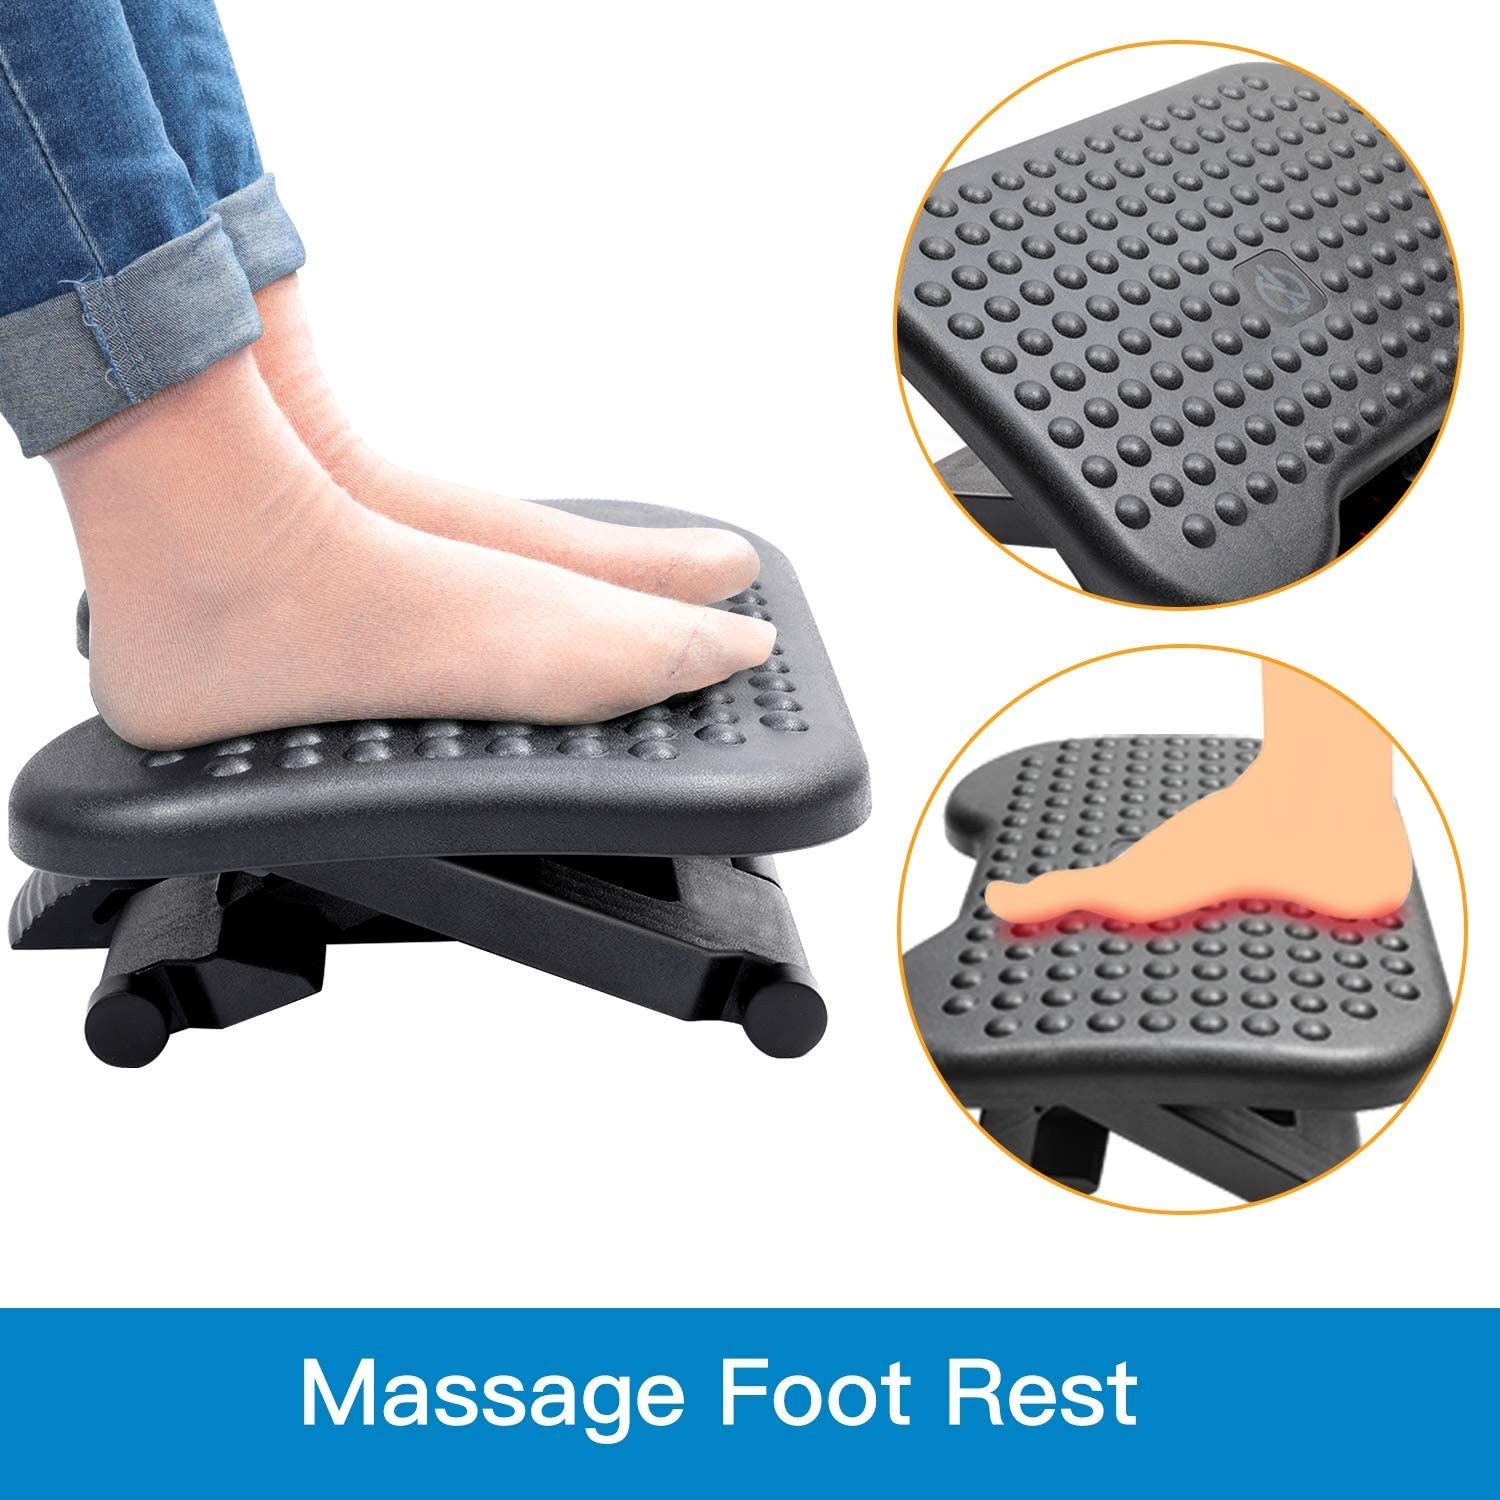 HUANUO Foot Rest Under Desk Adjustable Ergonomic Footrest for